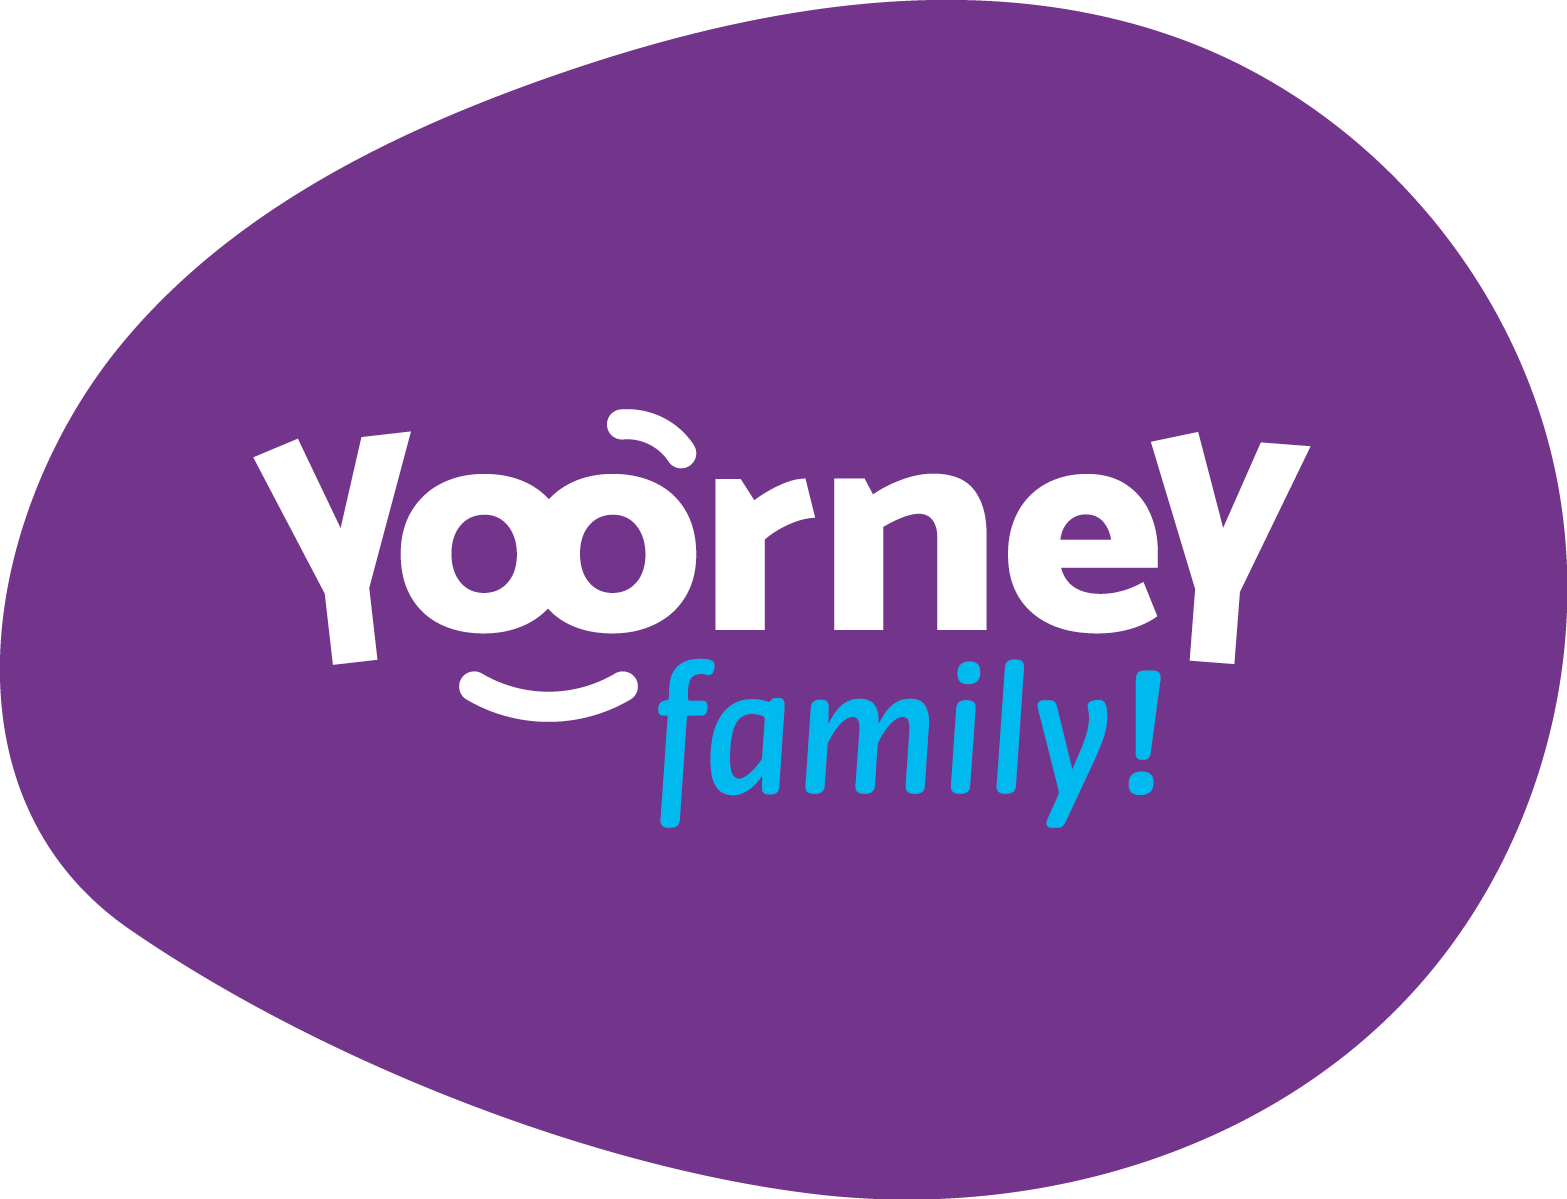 logotipo_family_yoorney.png